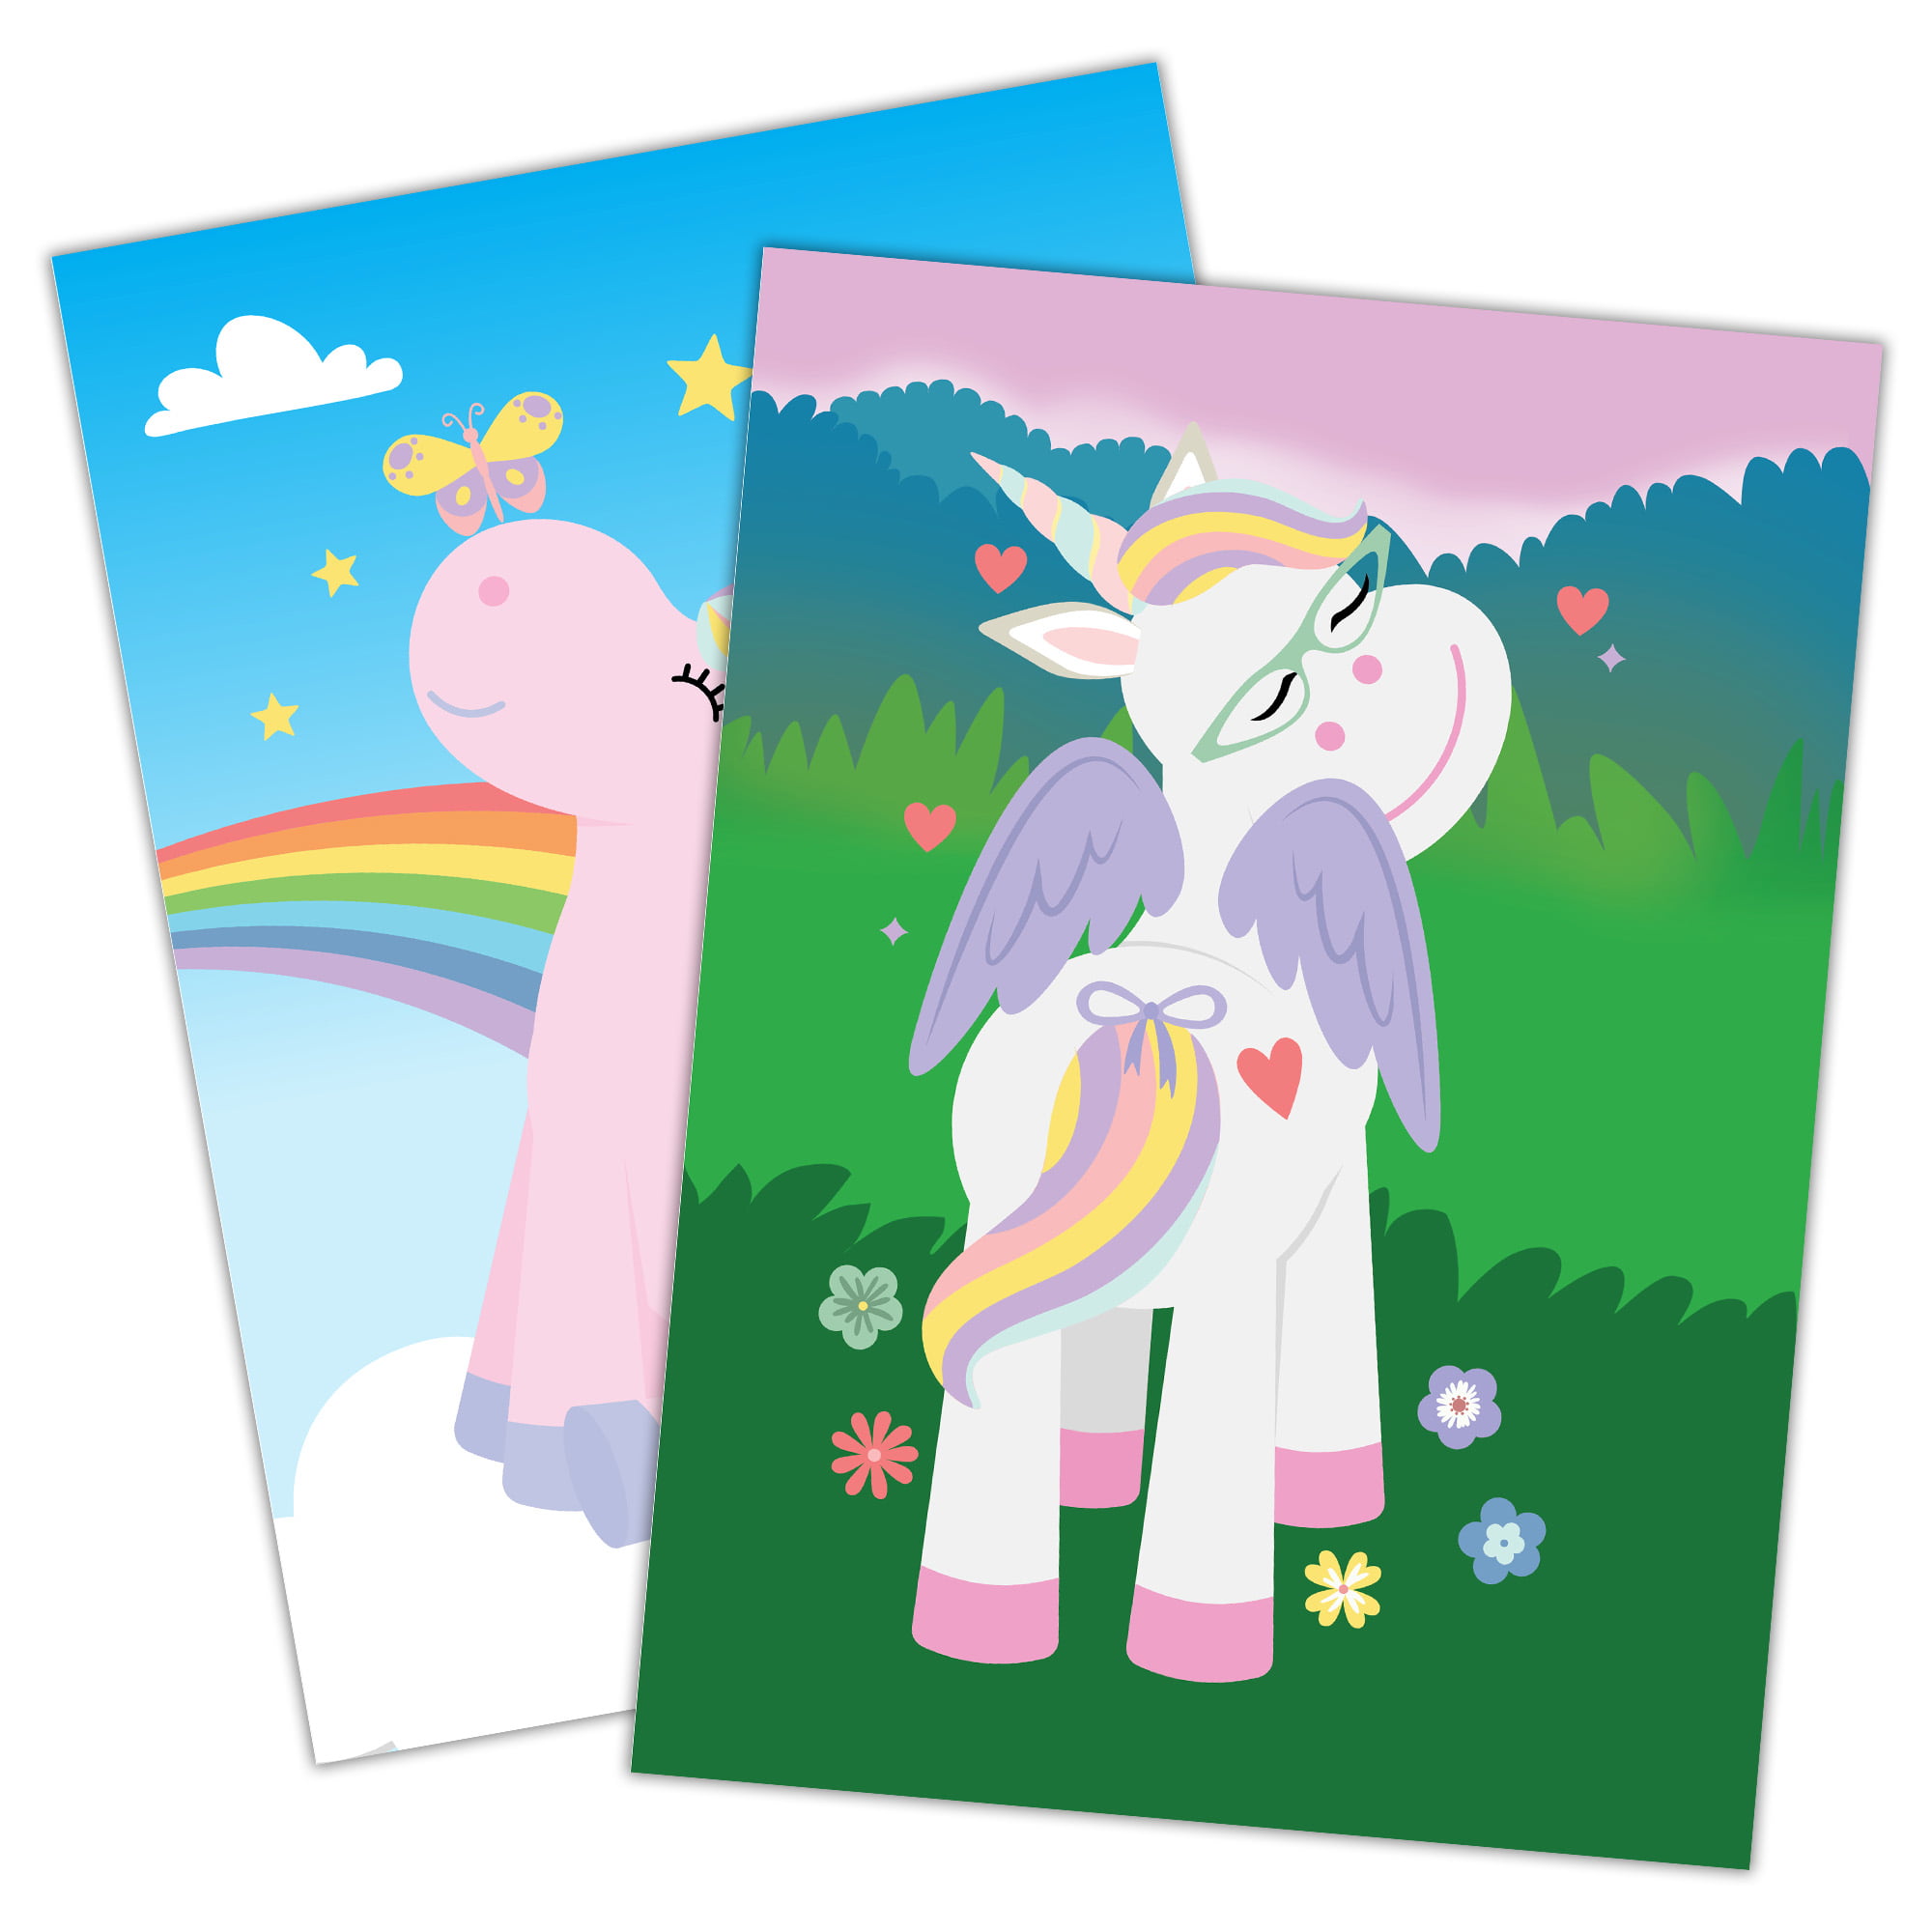 Tribello Unicorn Mini Sticker Book ~ 12 Unicorn Sticker Books with Rainbow Unicorn Stickers for Kids Crafts, Unicorn Birthday Unicorn Party Favors